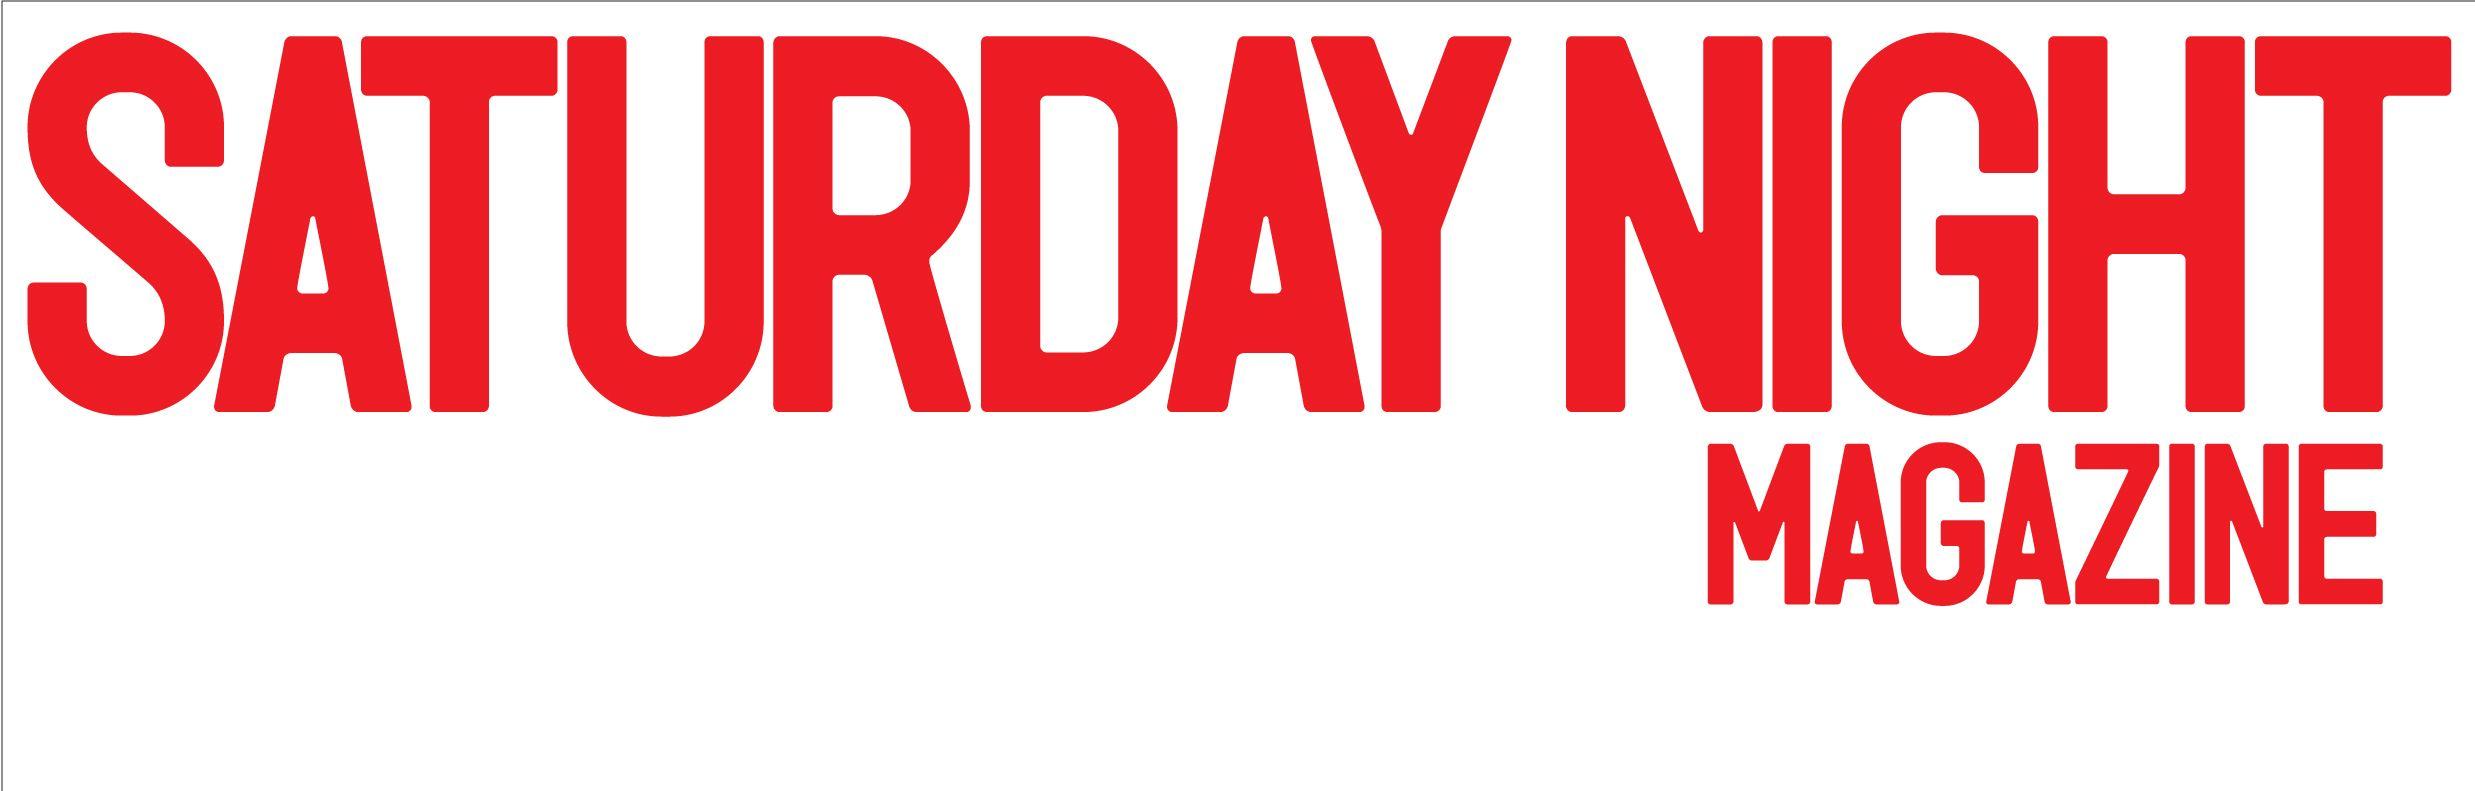 Saturday Logo - Saturday Night Magazine (logo)